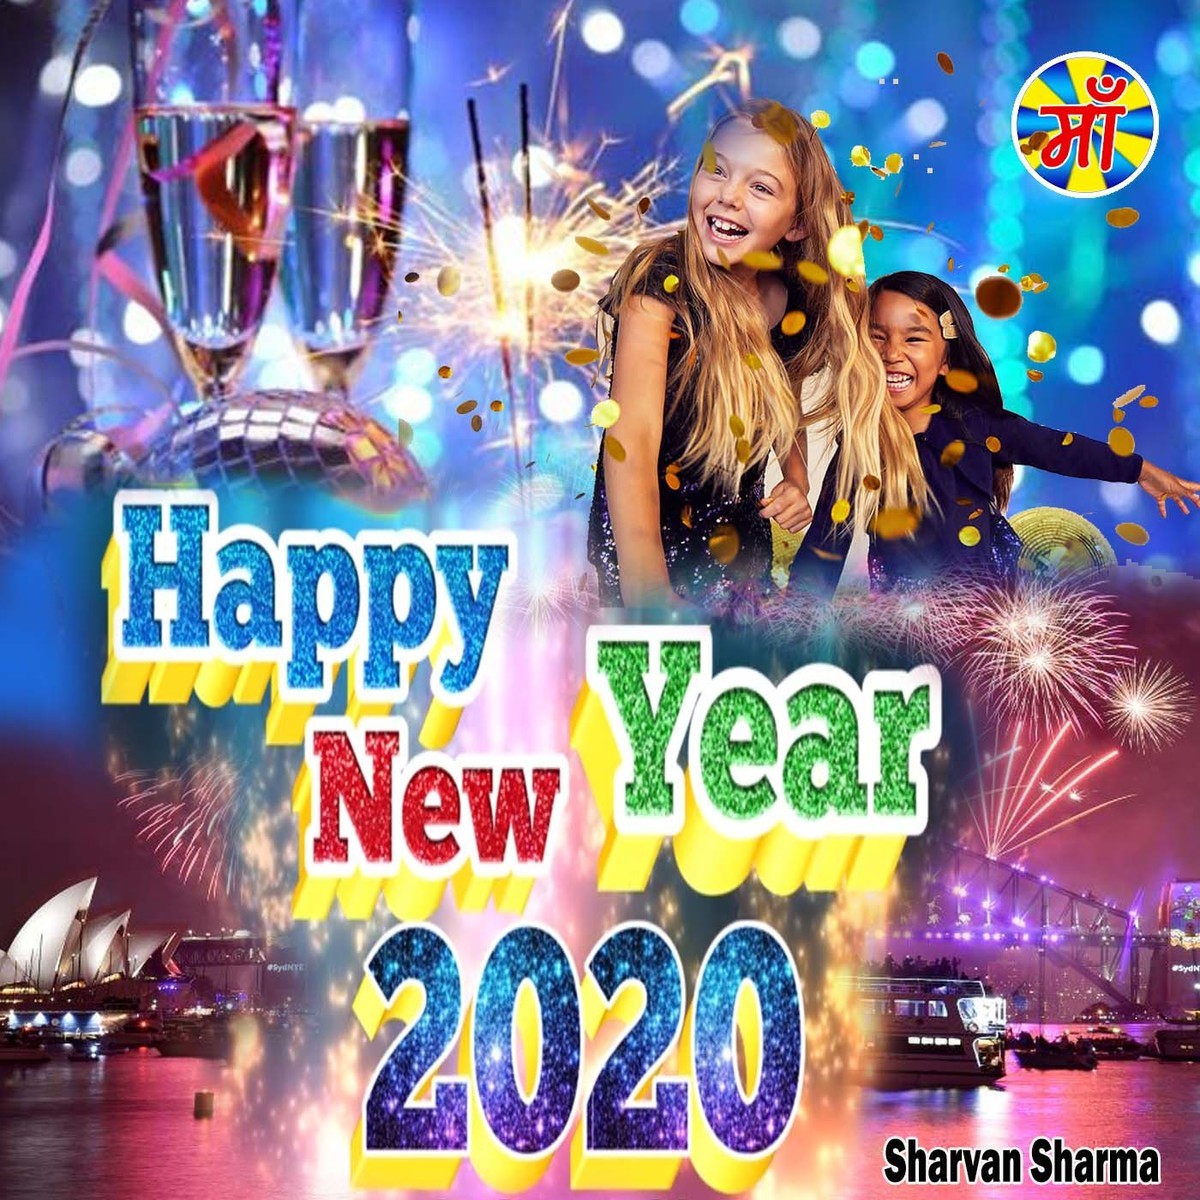 Larkhota: Happy New Year 2020 Bhojpuri Song Video